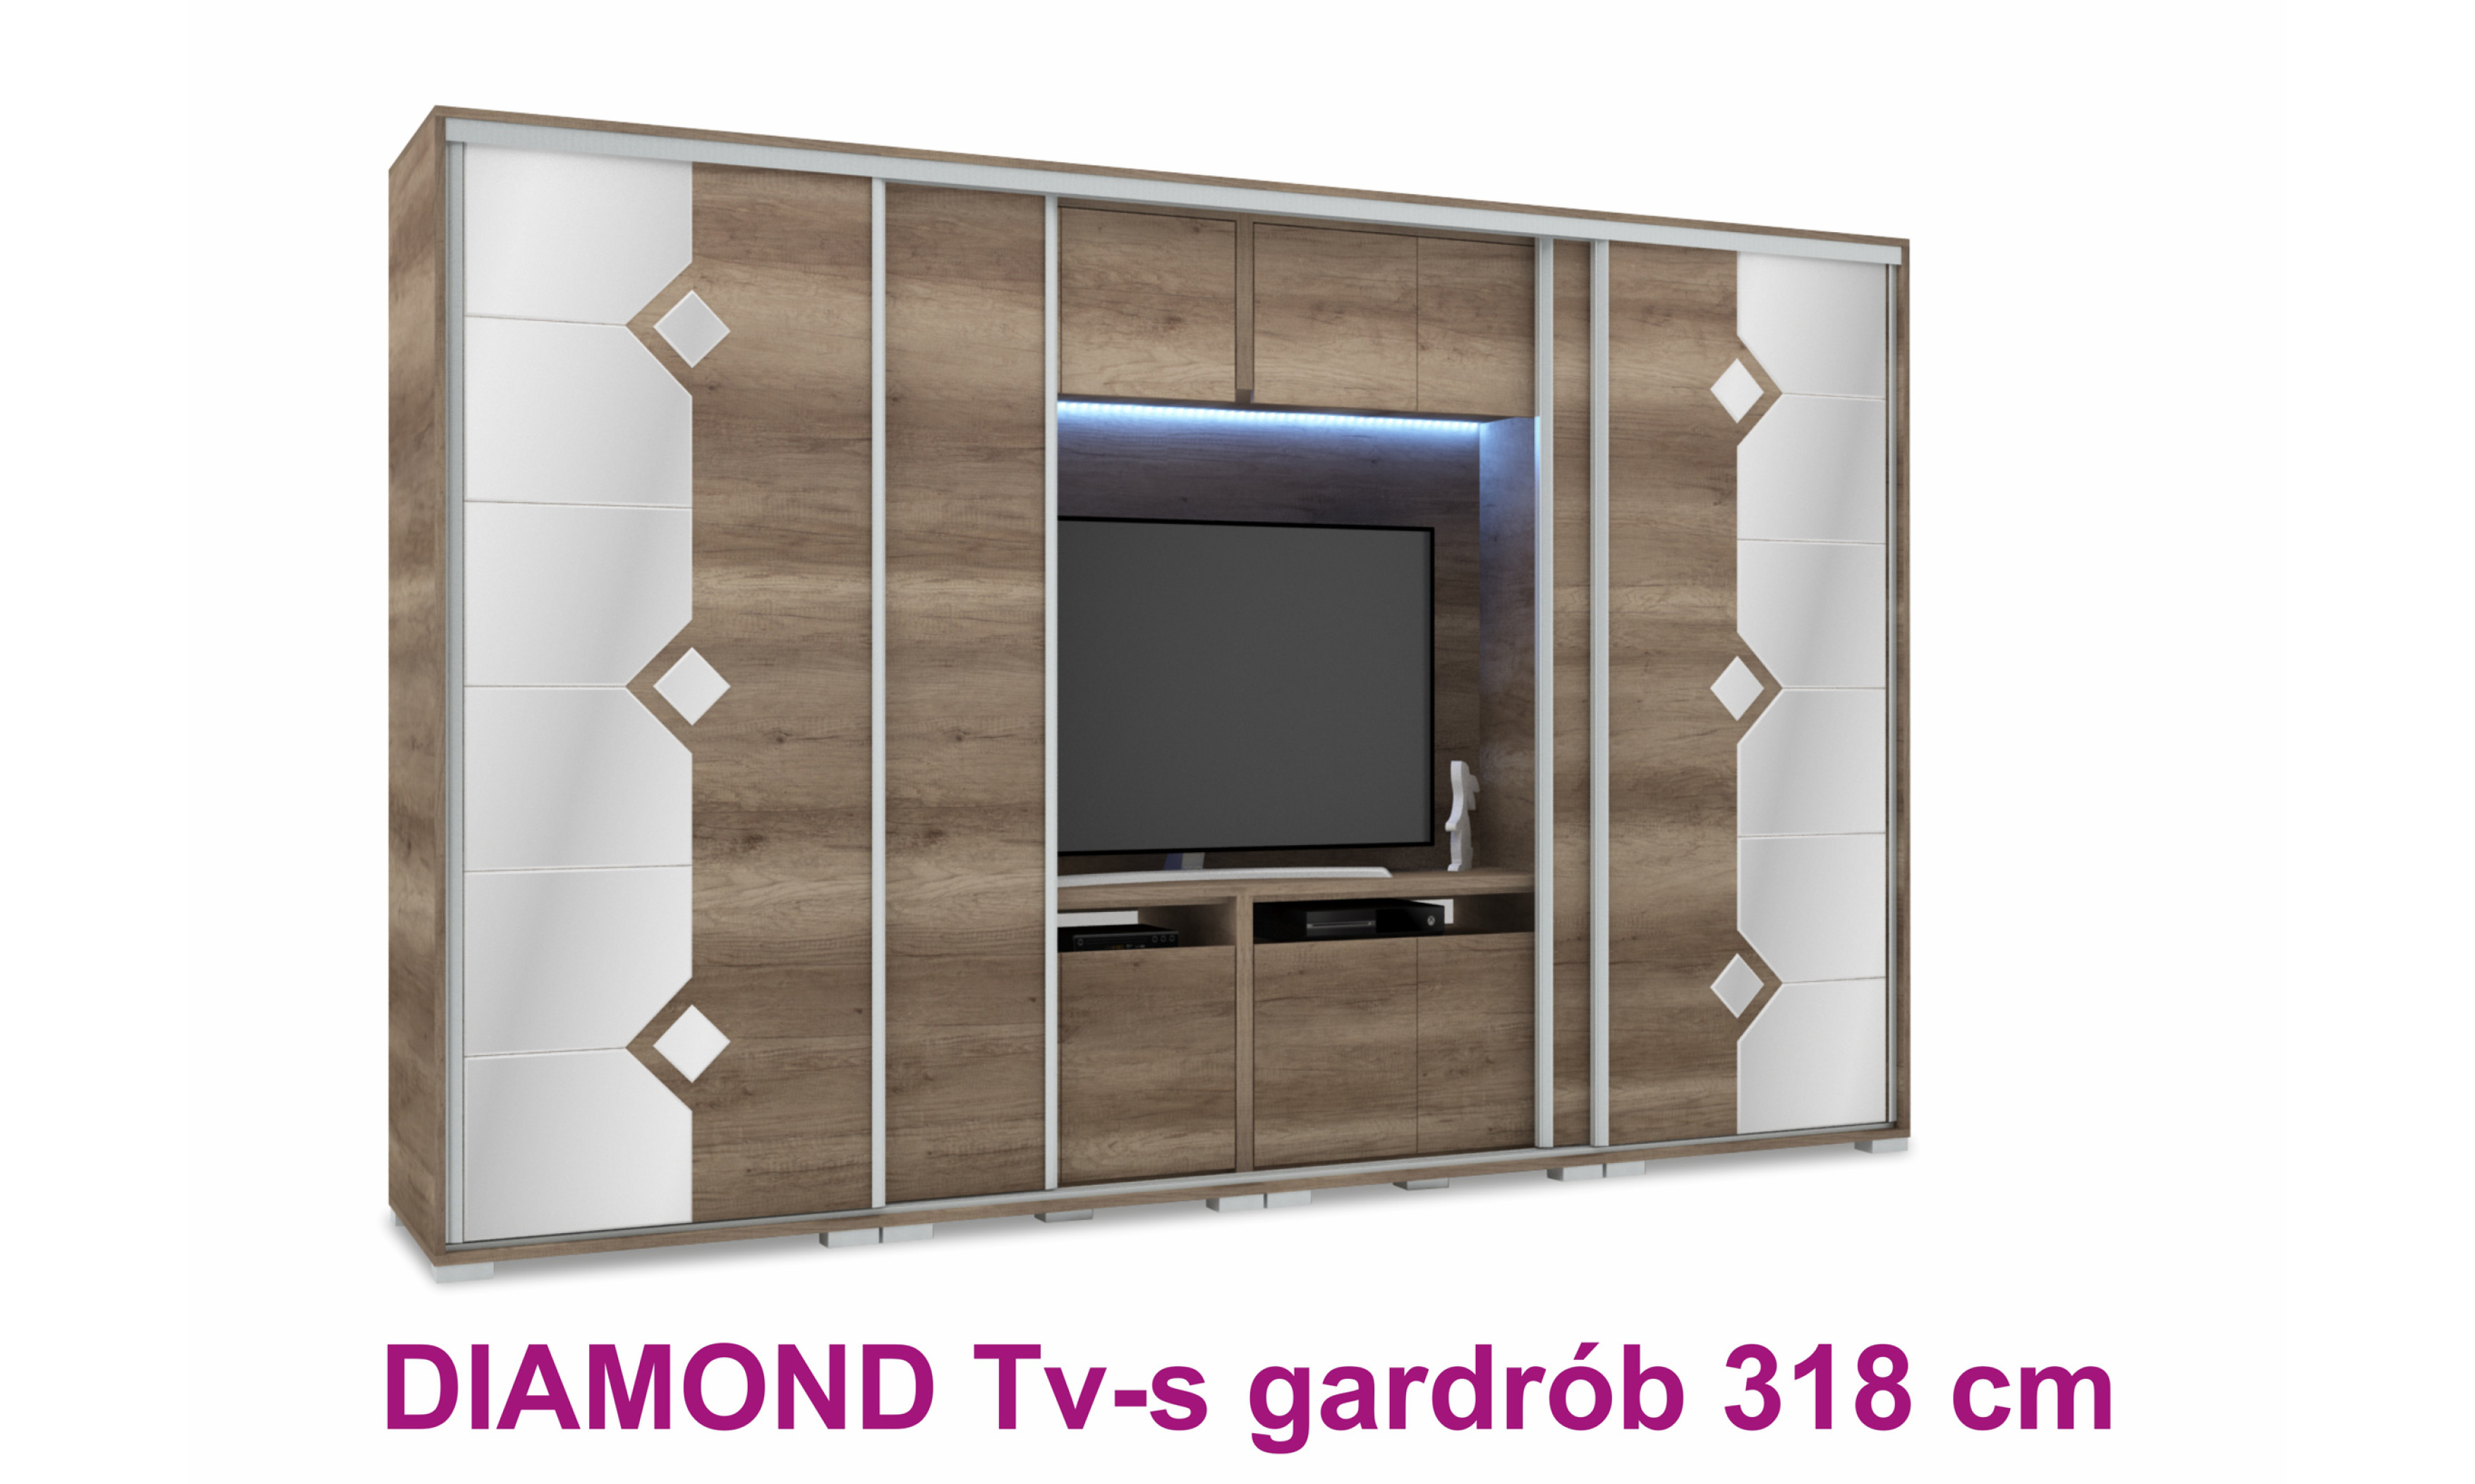 Diamond TV-s tolóajtós gardrób 318